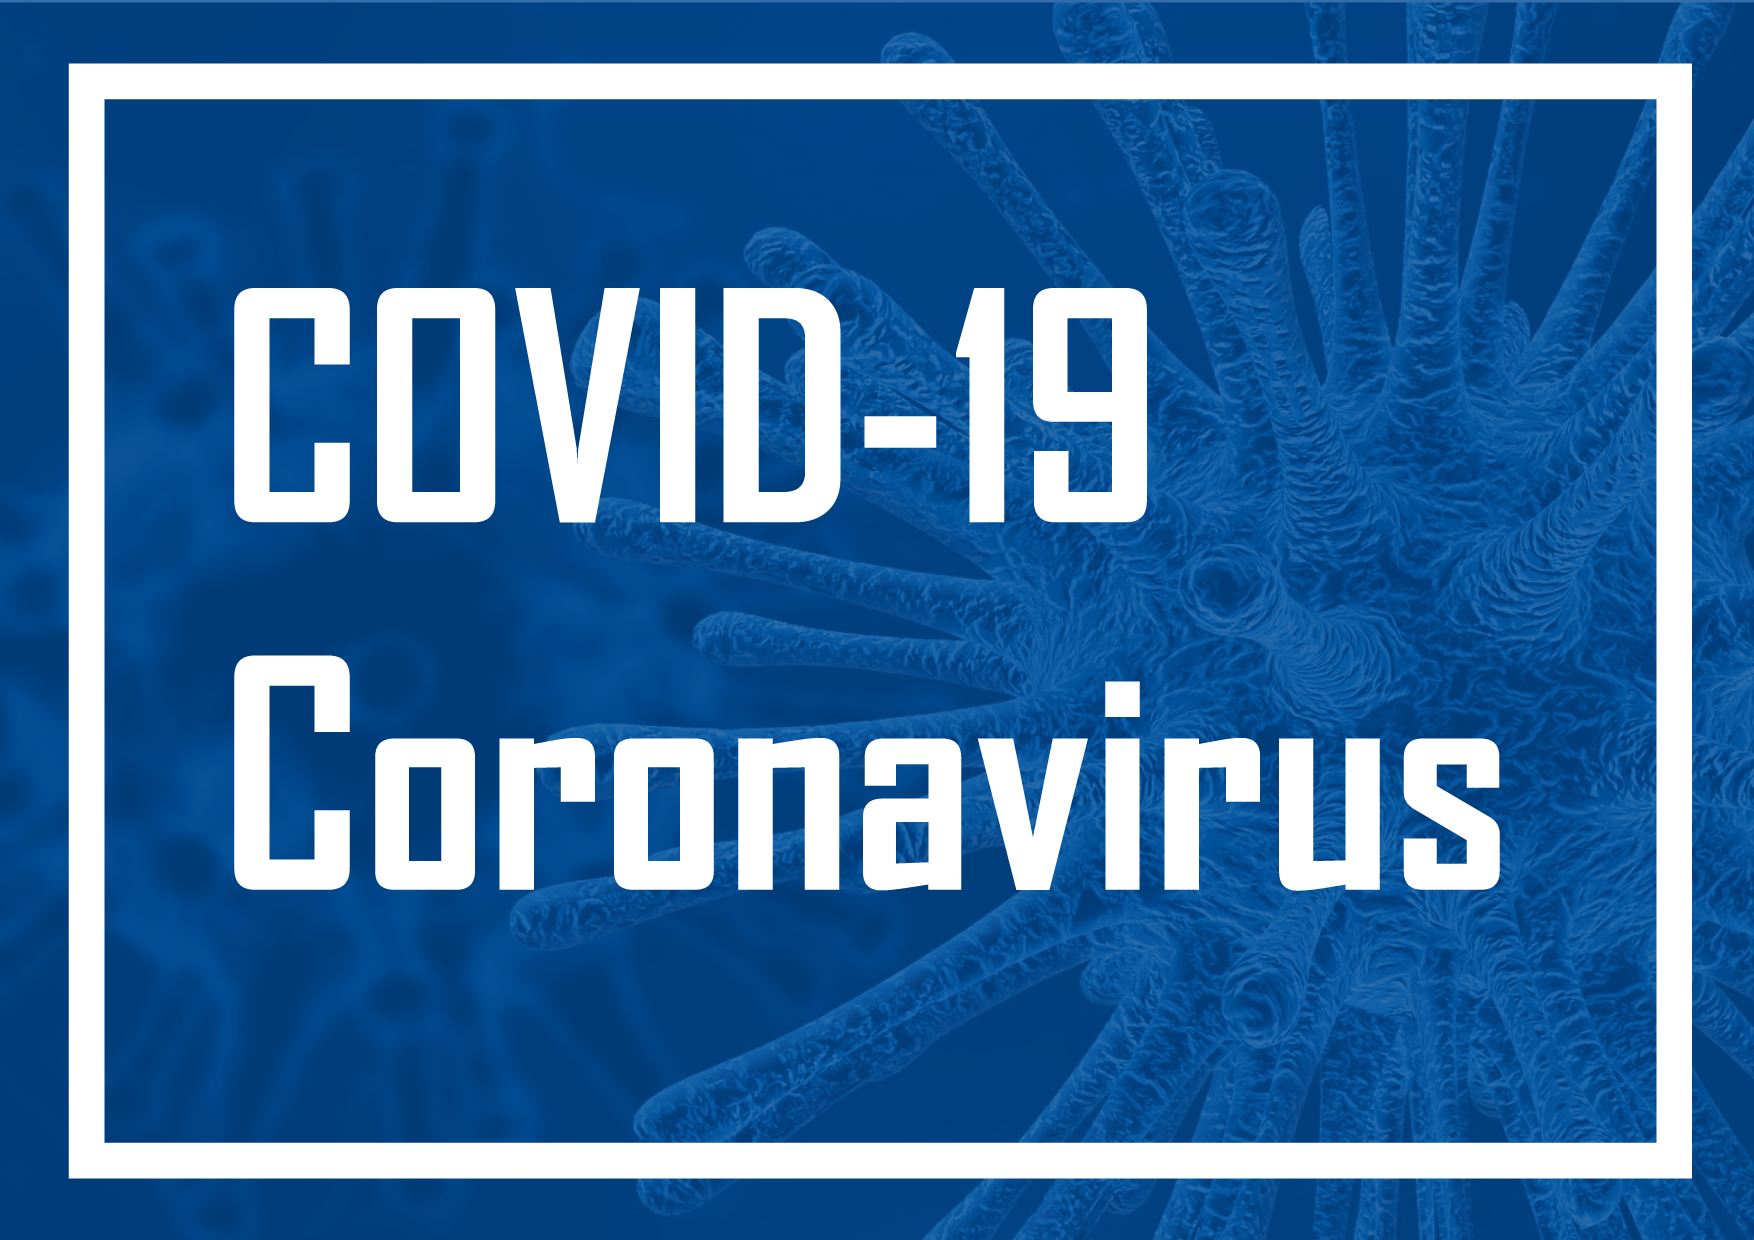 Coronavirus pic for website